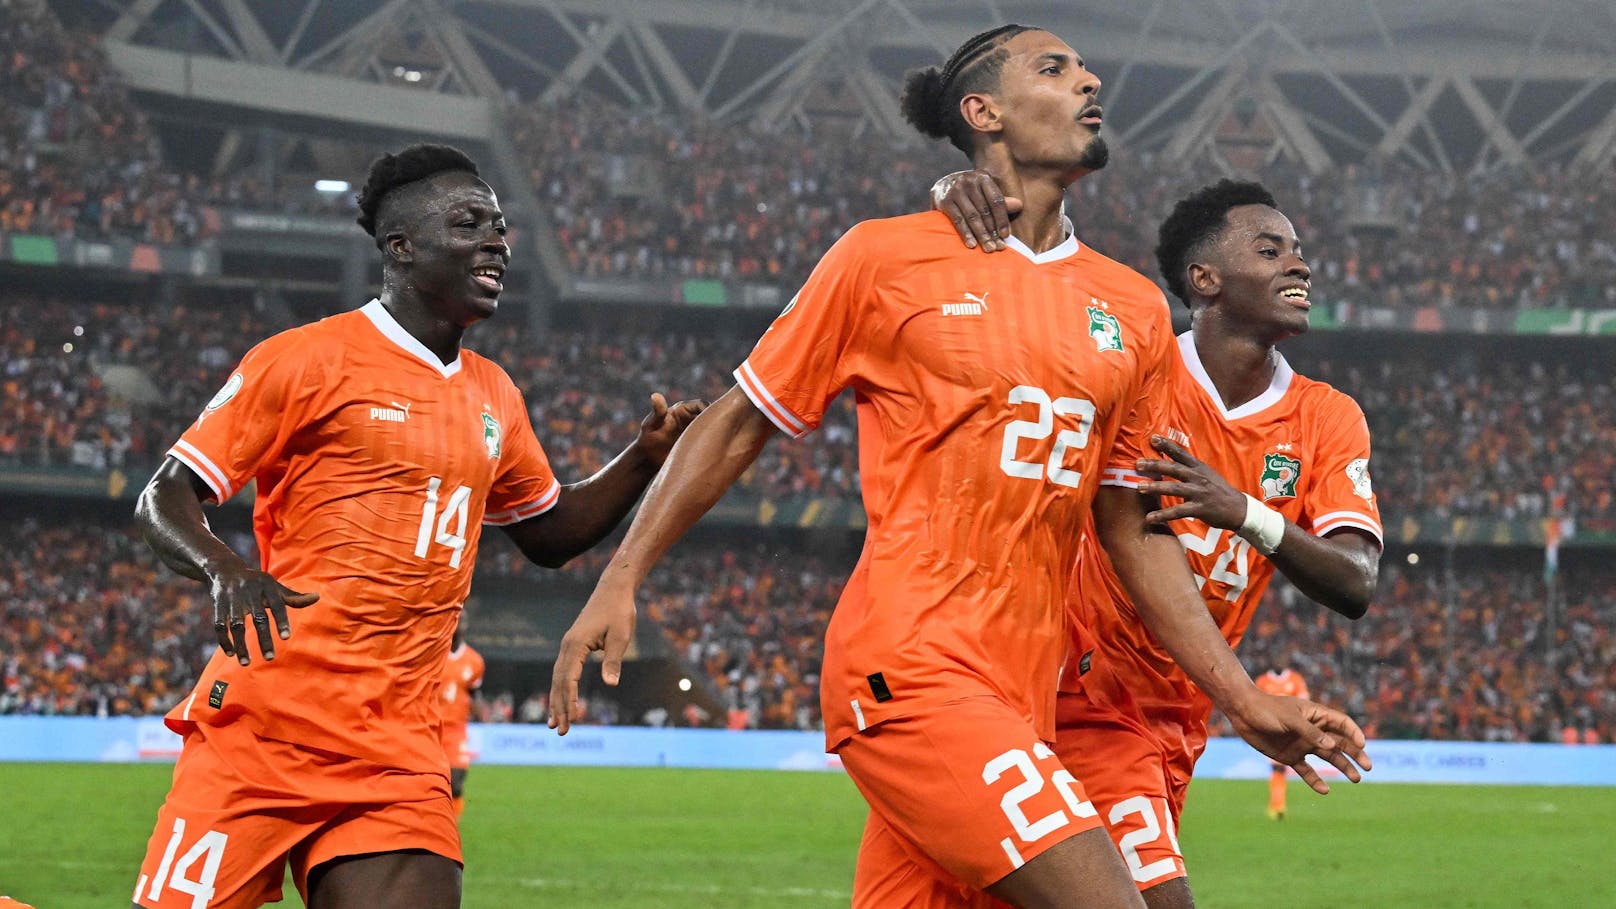 Elfenbeinküste krönt sich zum Afrika-Cup-Champion